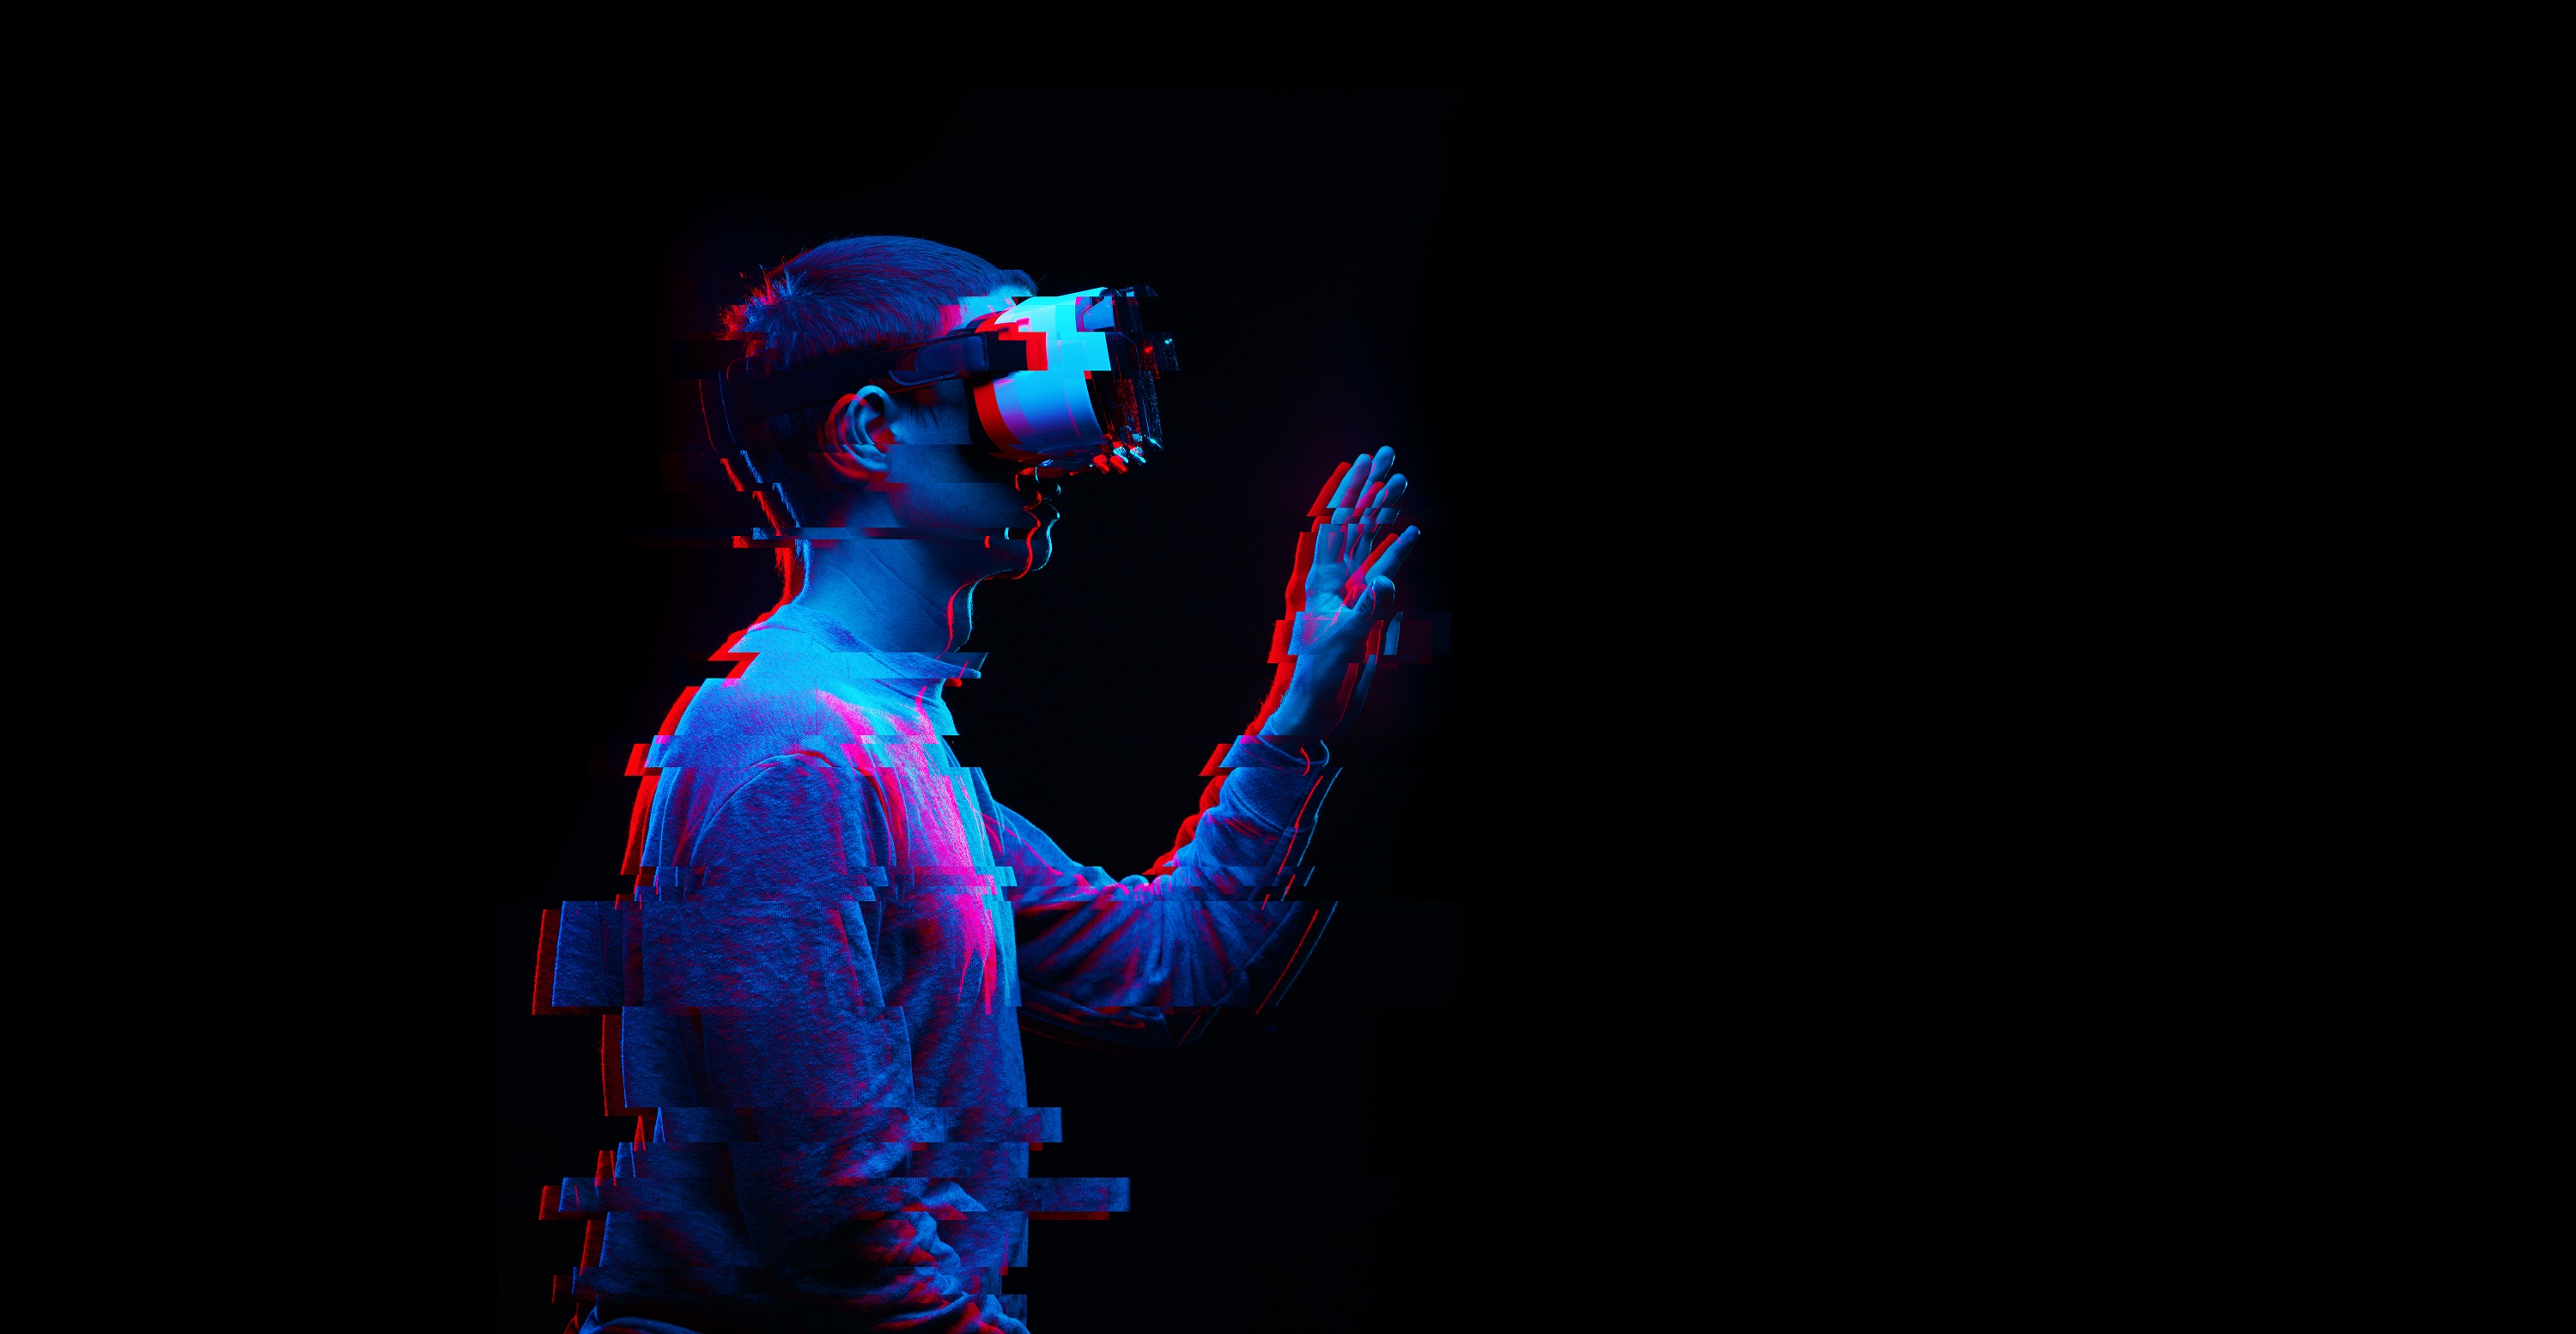 Foto: Ein Mann benutzt ein Virtual-Reality-Brille. Bild mit Glitch-Effekt.